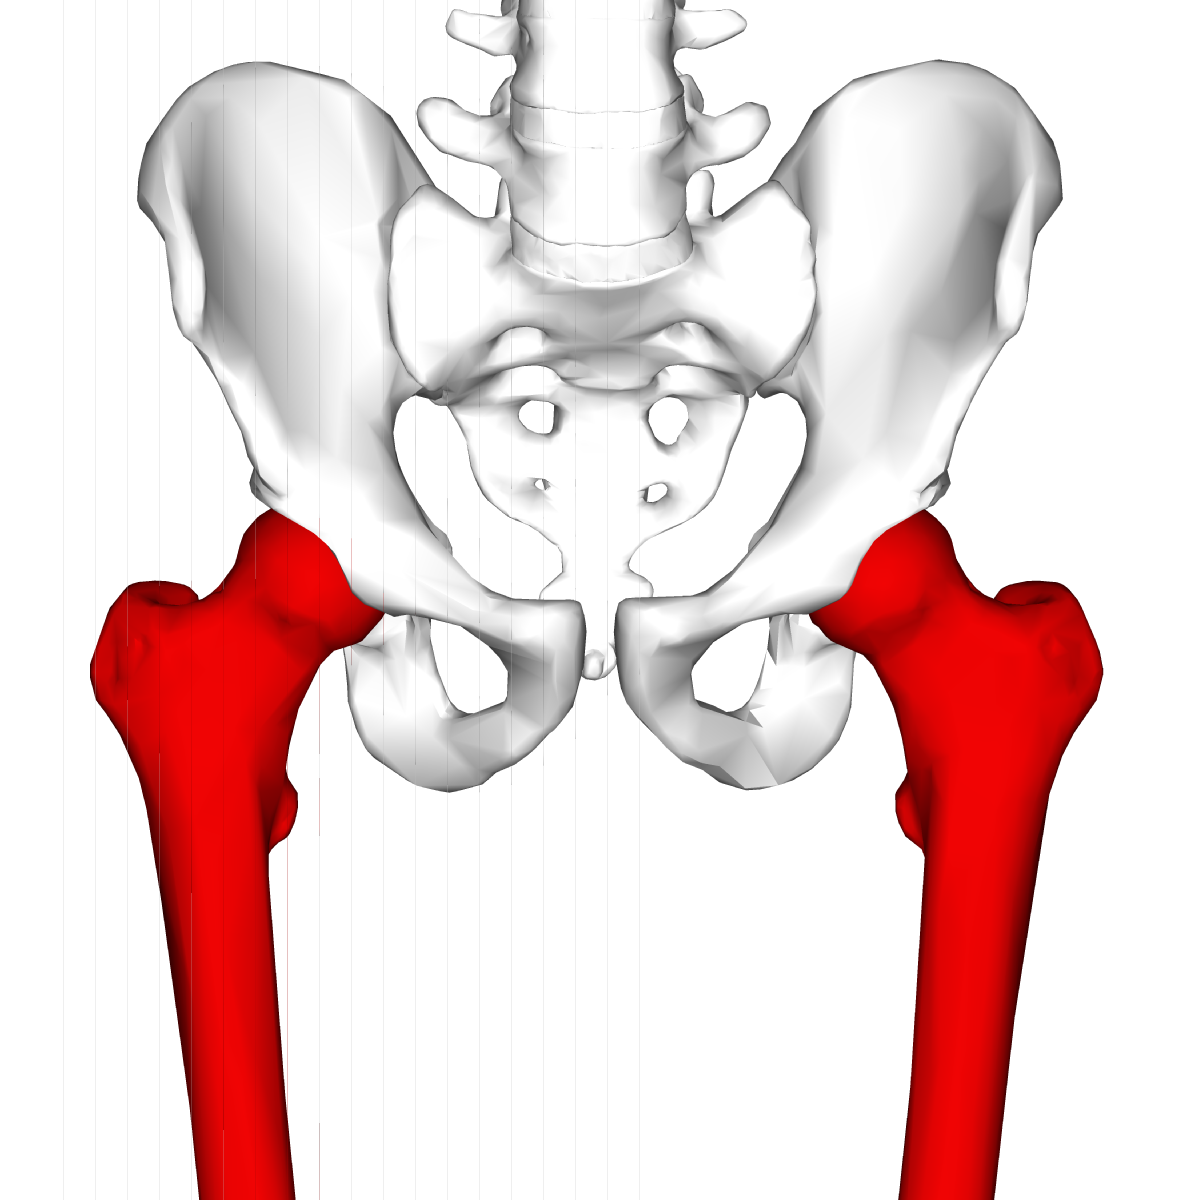 骨盤のズレが原因で股関節の痛みが出ていた患者さんの１症例